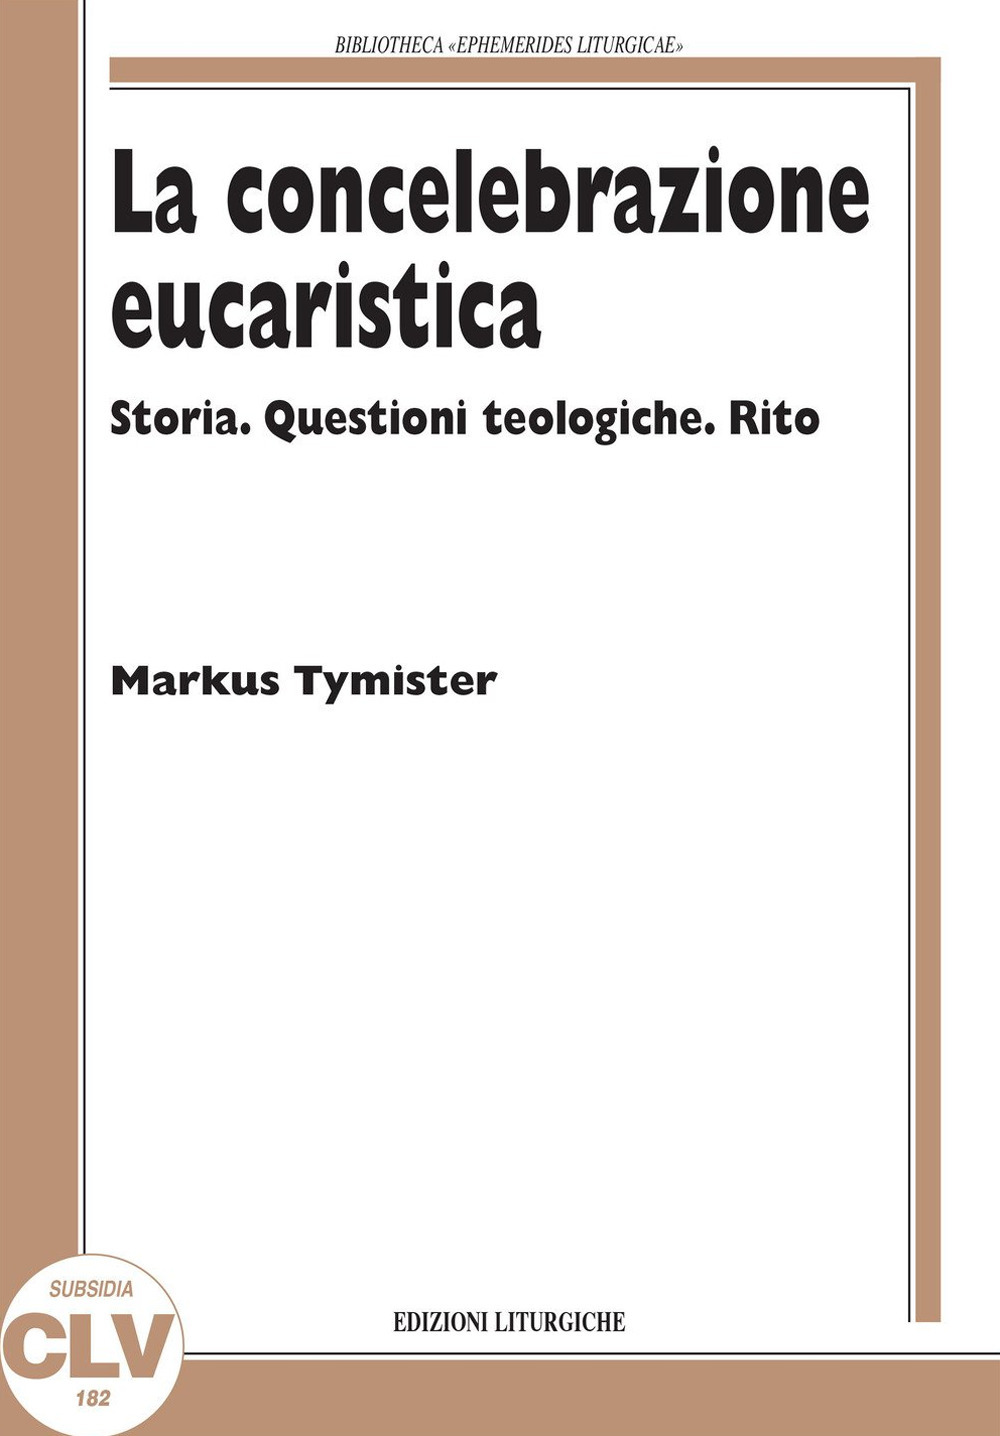 La concelebrazione eucaristica. Storia. Questioni teologiche. Rito